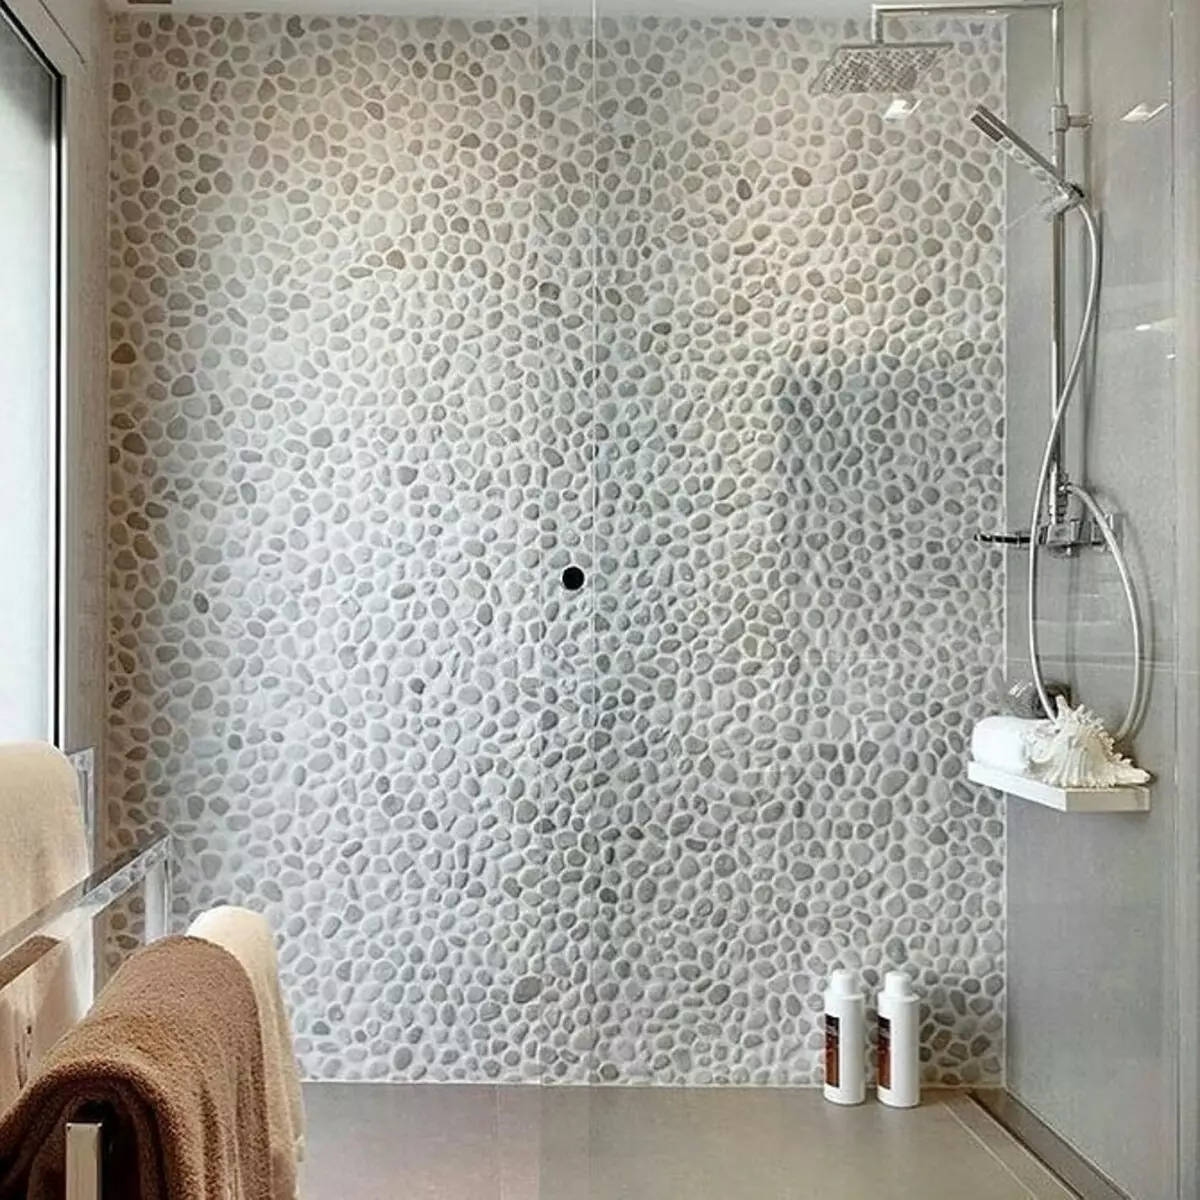 Elegante e fermoso: Mosaico no deseño do baño (66 fotos) 2724_47